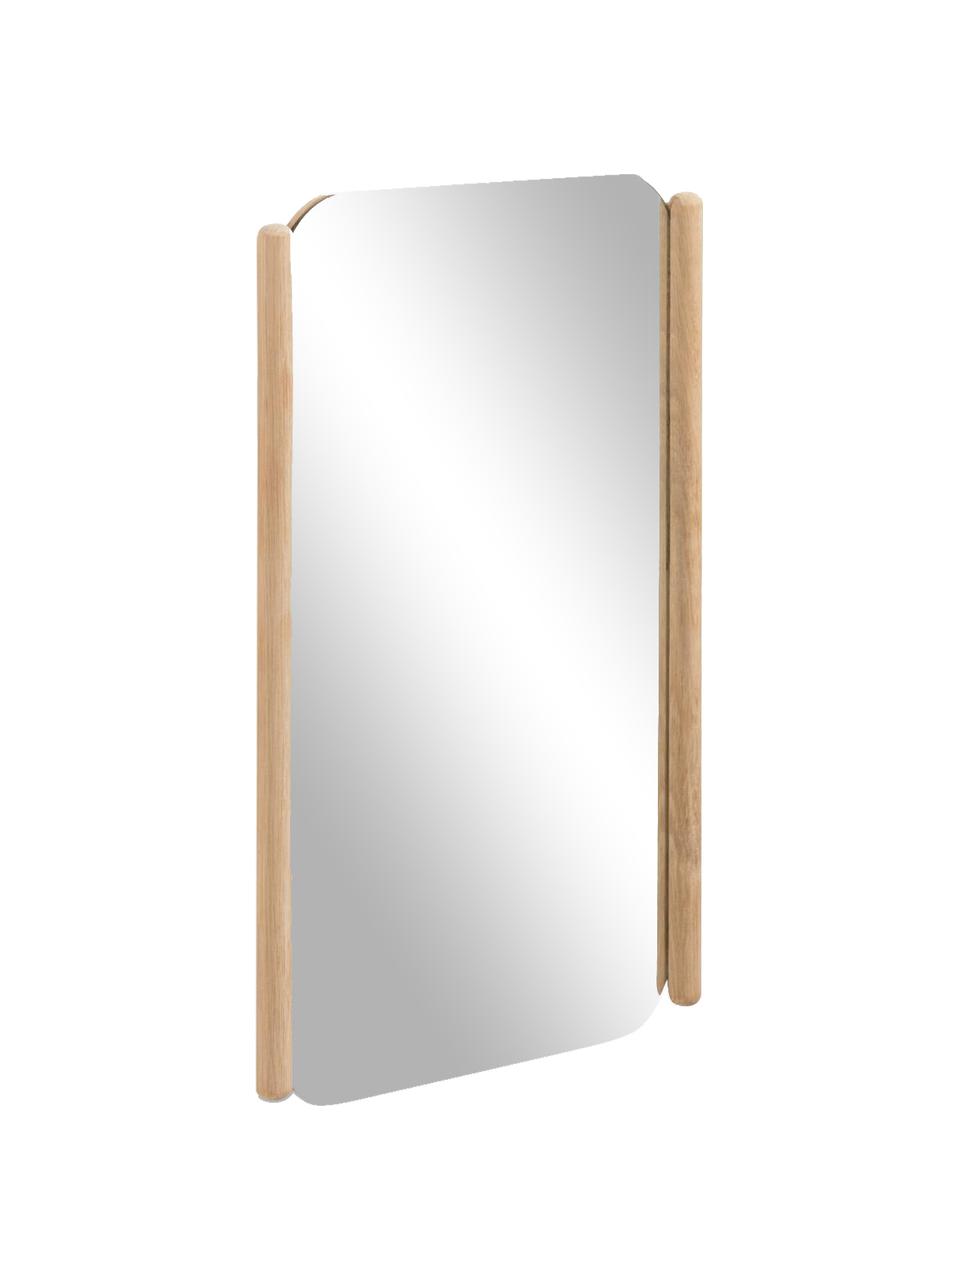 Nástěnné zrcadlo se světle hnědým dřevěným rámem Natane, Světlé dřevo, Š 34 cm, V 54 cm